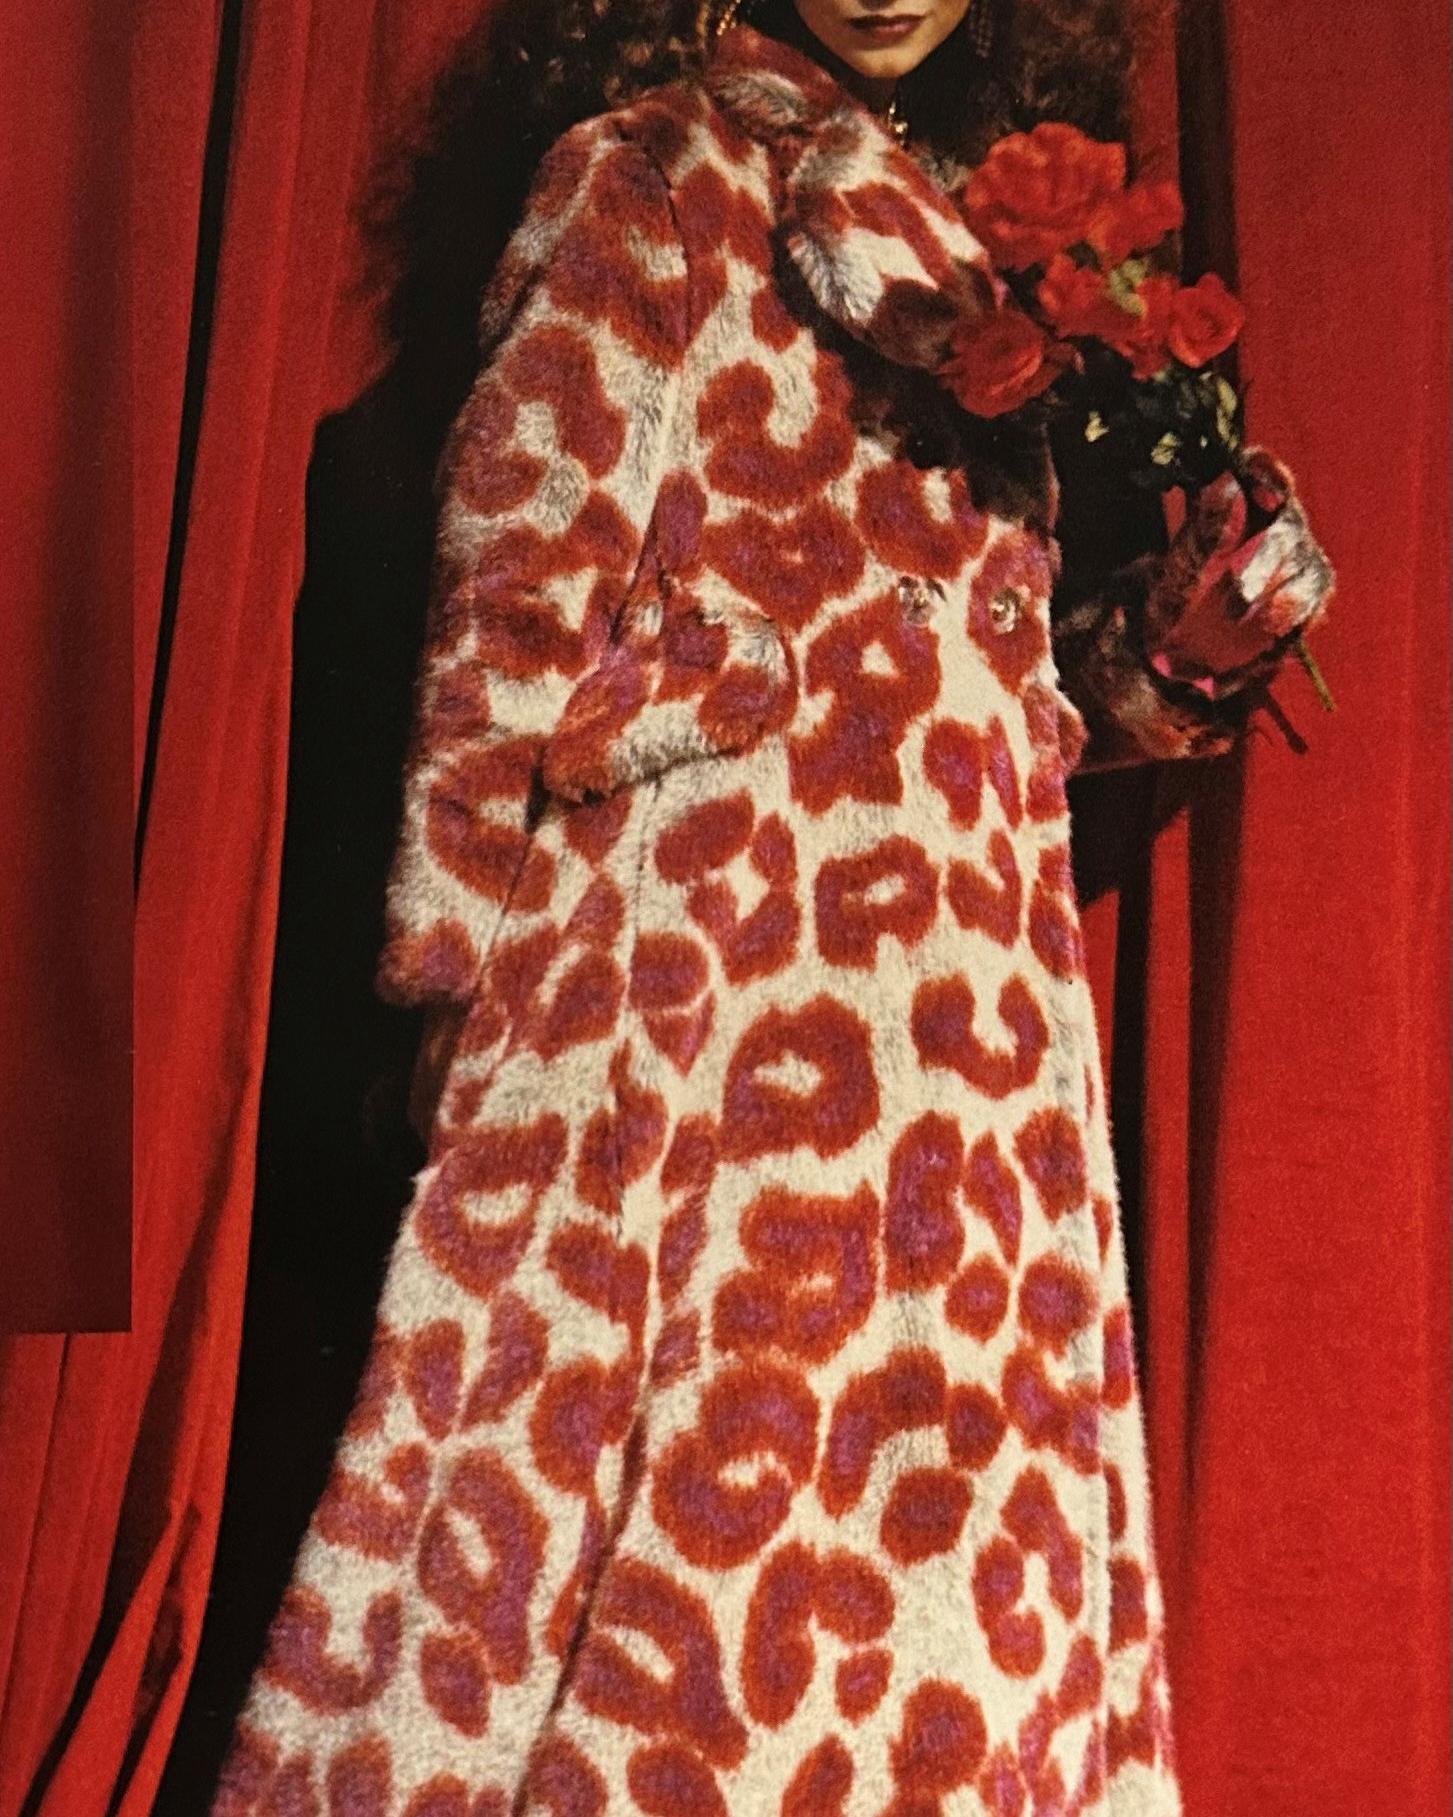 A/W 1992 Vivienne Westwood 'Always on Camera' Collection manteau et ensemble de gants en fausse fourrure rouge et beige imprimé léopard. Manteau à manches longues en fausse fourrure à double boutonnage avec larges revers et poches sur les hanches,